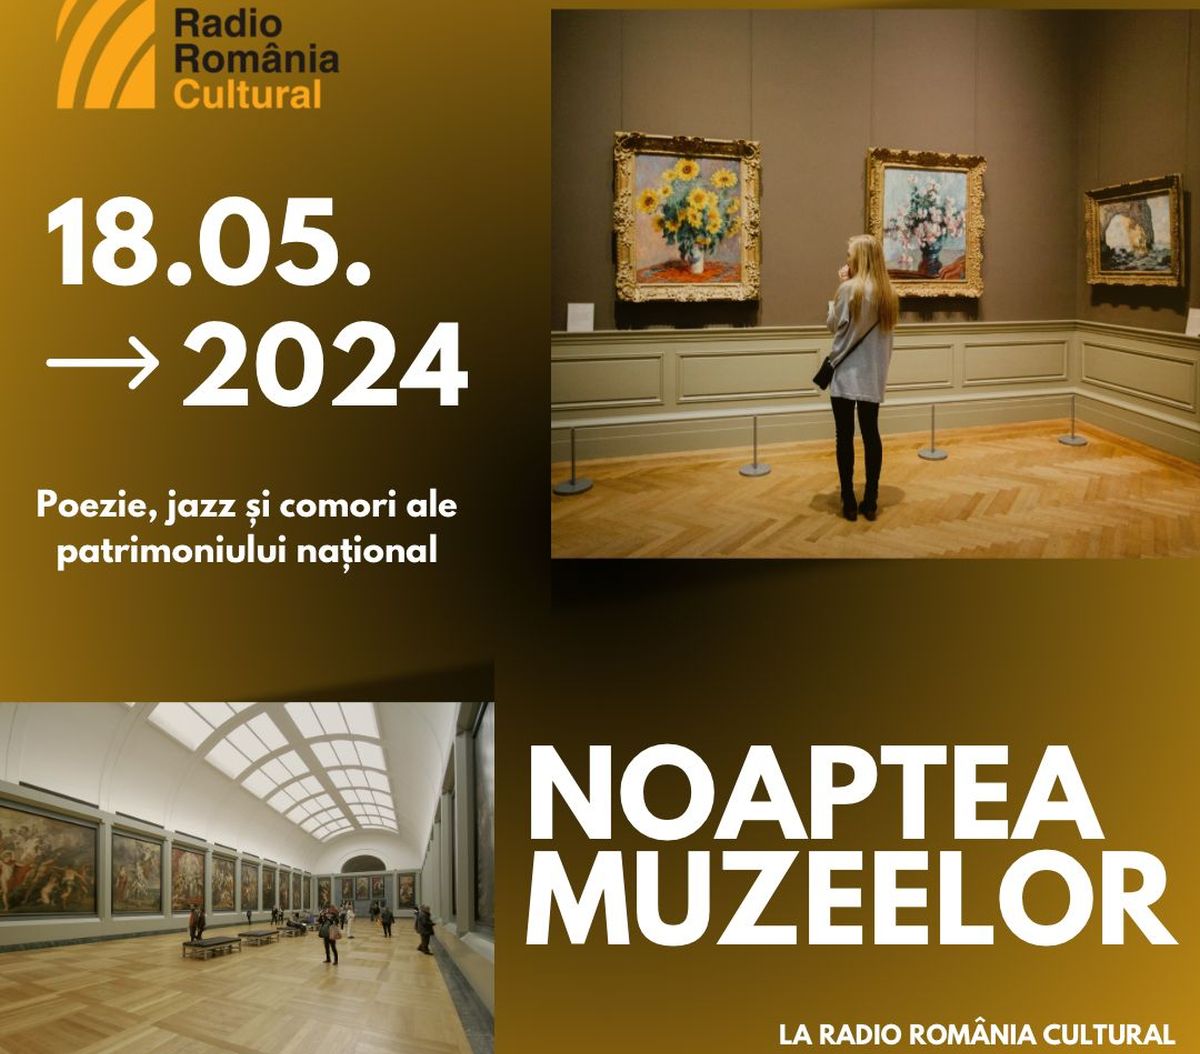 noaptea muzeelor la Radio Romania Cultural